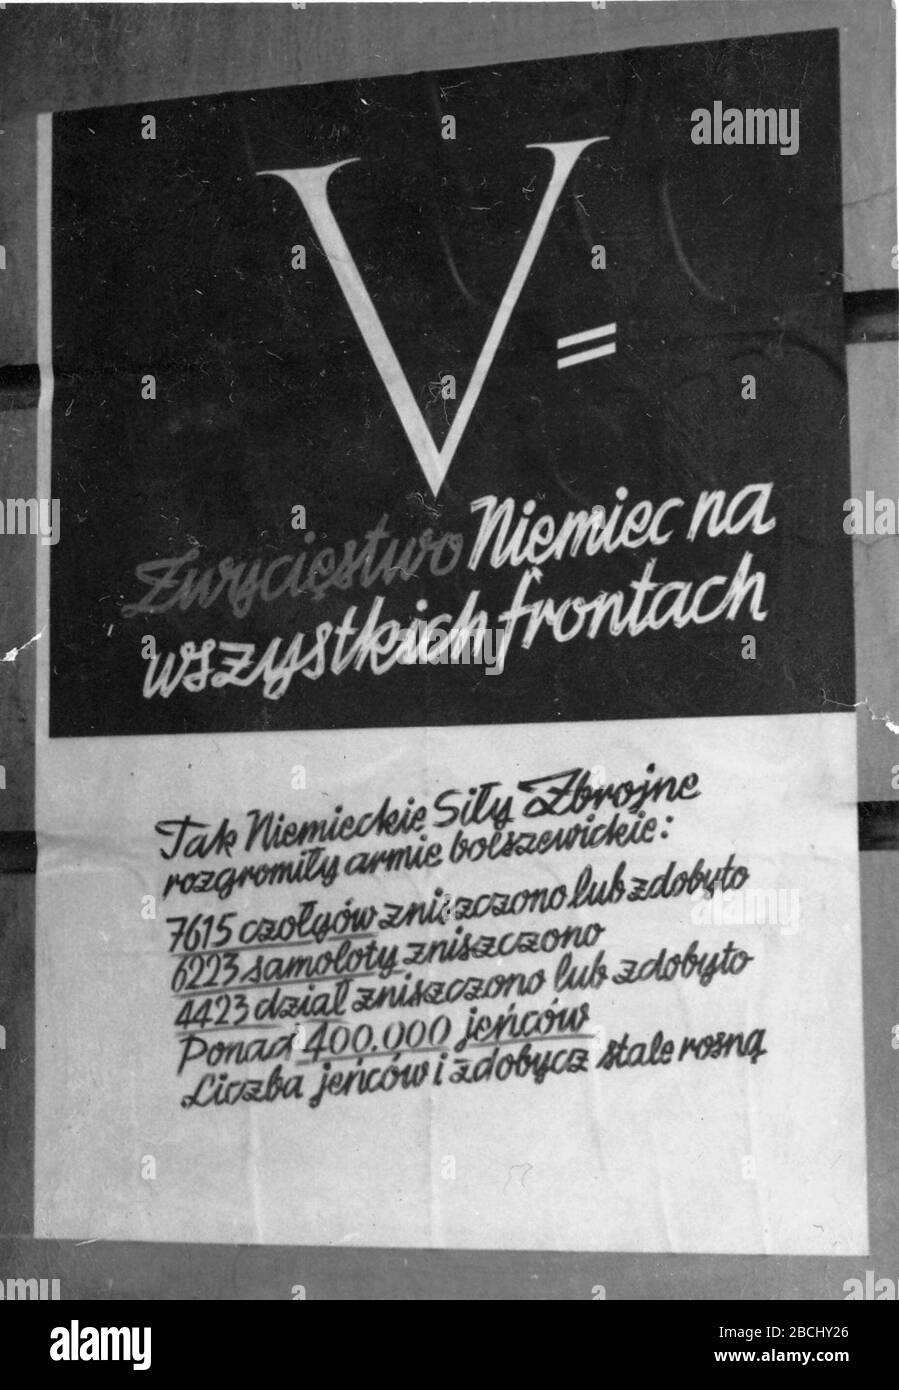 Inglés: Alemán propaganda Poster: V = victoria alemana en todos los  frentes. Parte de la campaña de propaganda alemana V. El cartel describe  las pérdidas rusas en la operación Barbarossa. Polski: Niemiecki